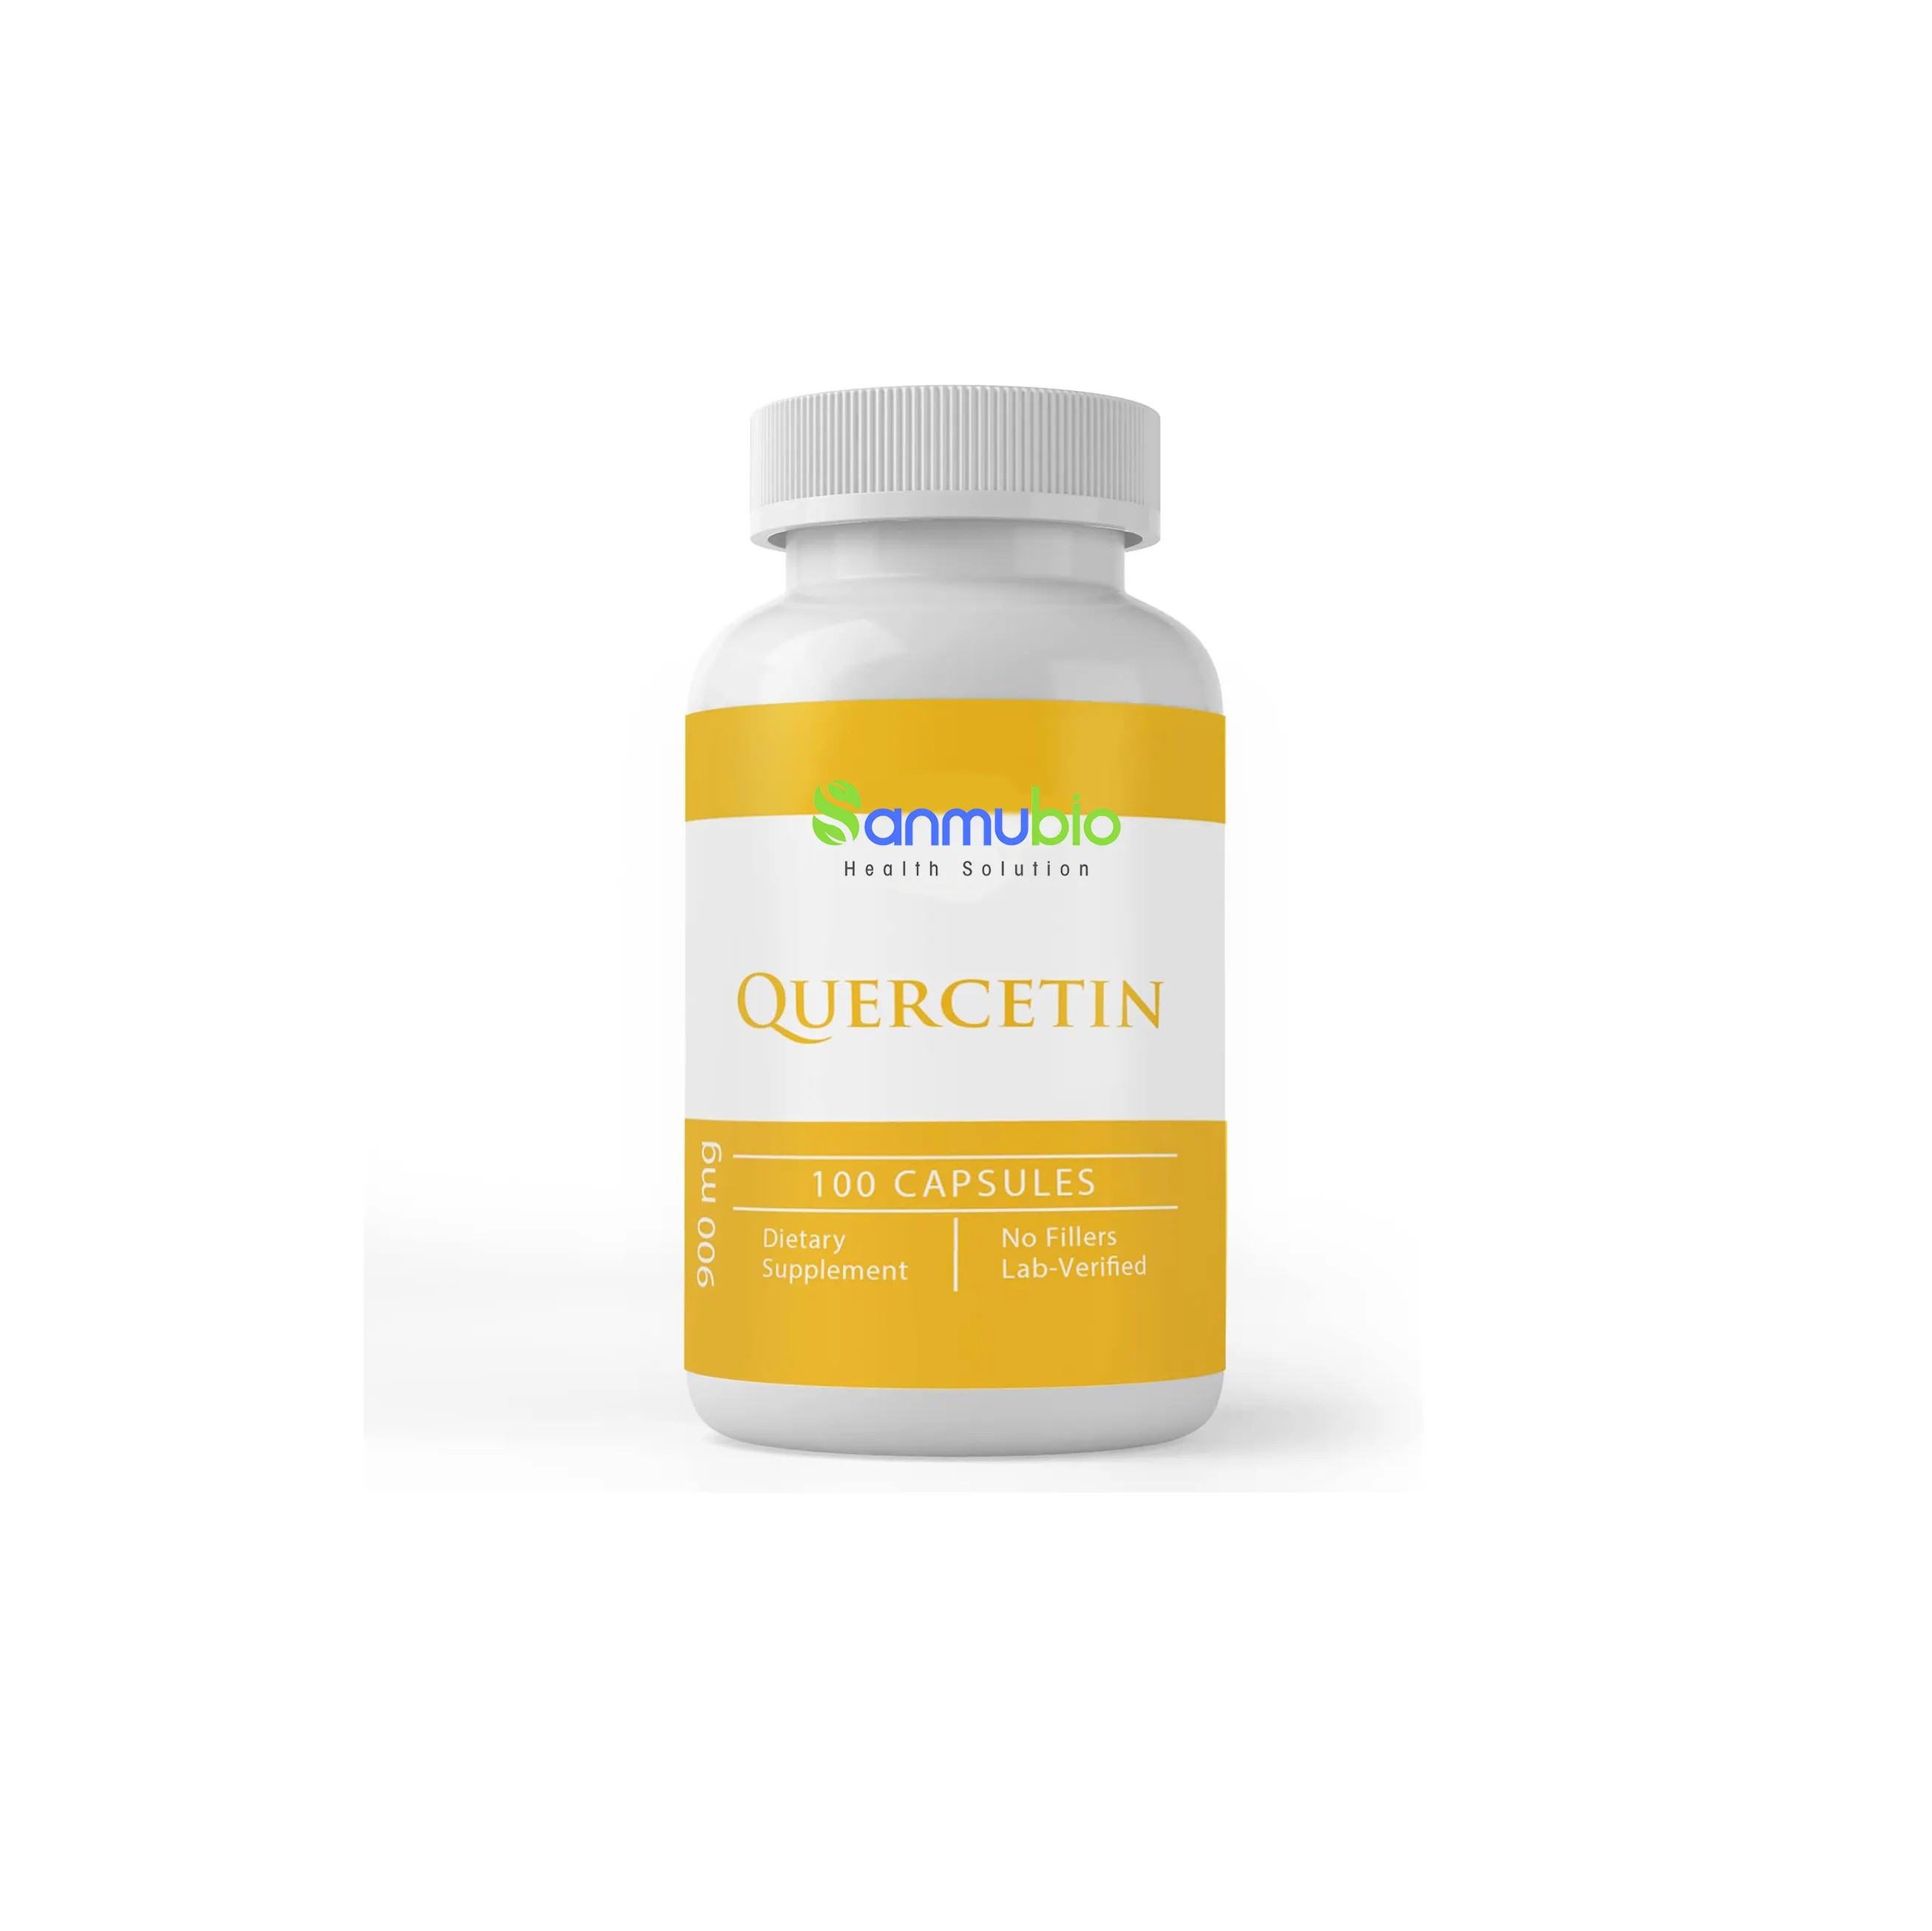 OEM potente antioxidante quercetina dihidrato alivio de alergias quercetina y tabletas de zinc